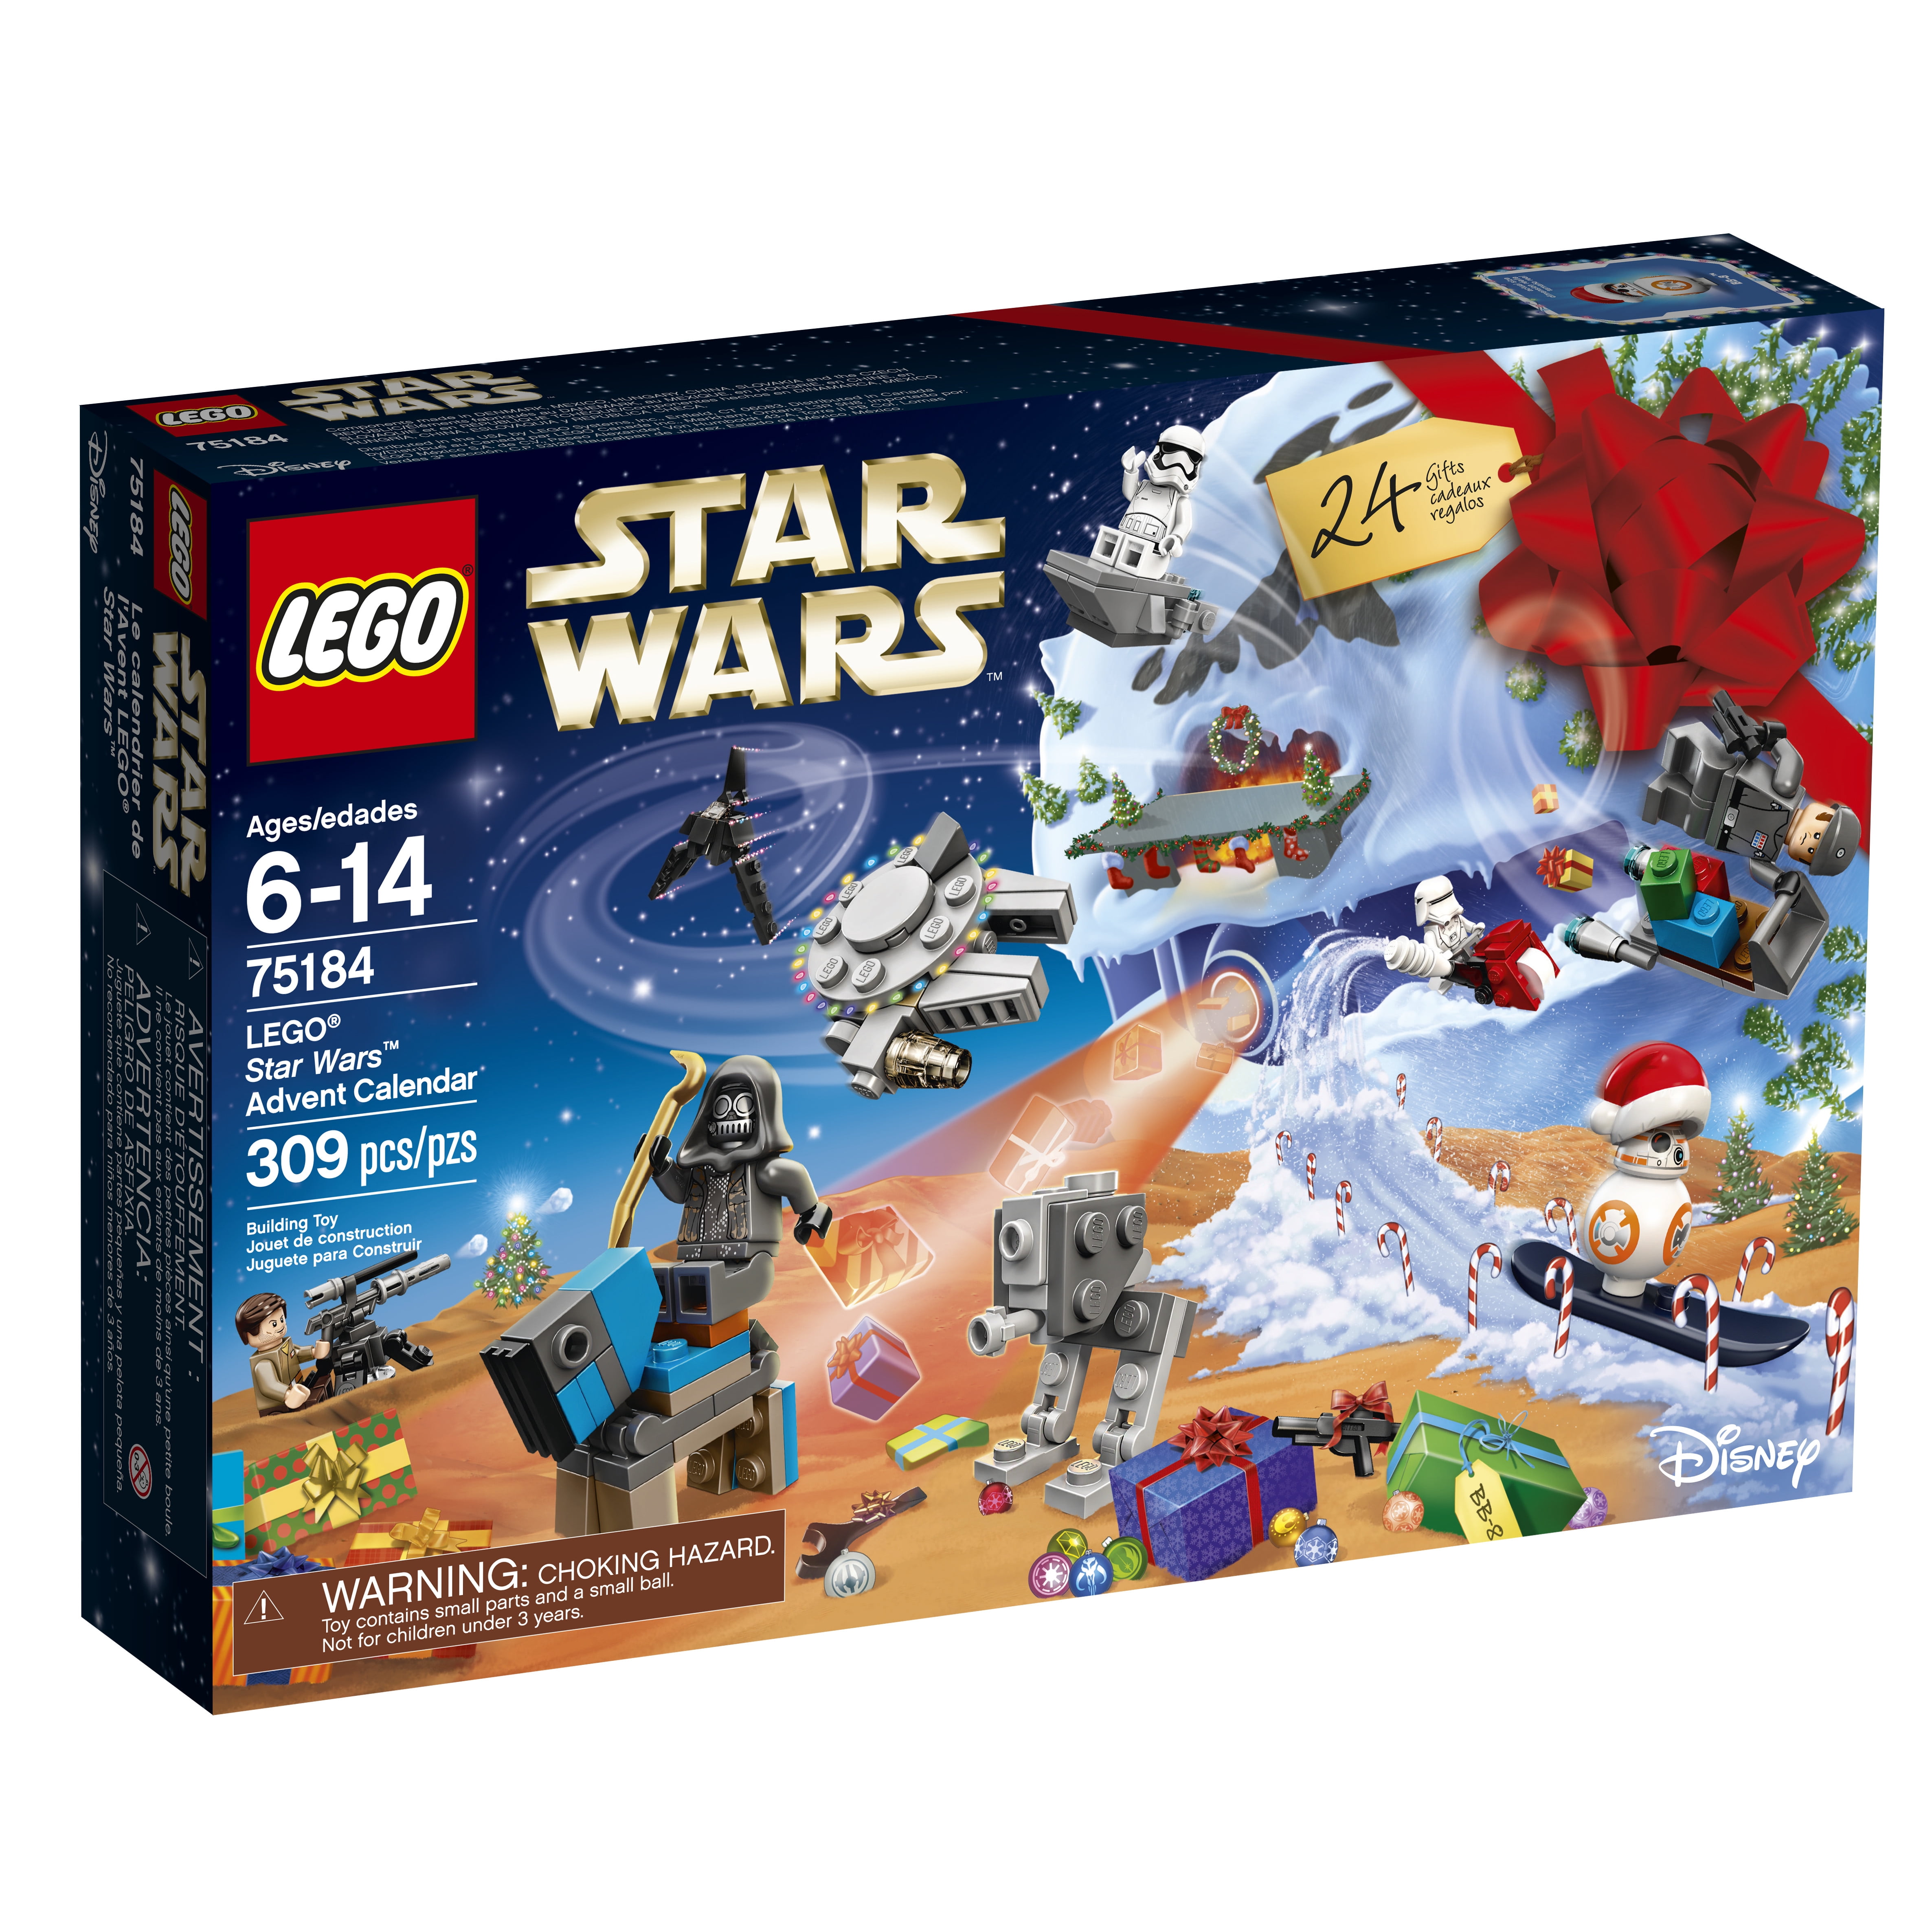 LEGO Star Wars 2017 Advent Calendar 75184